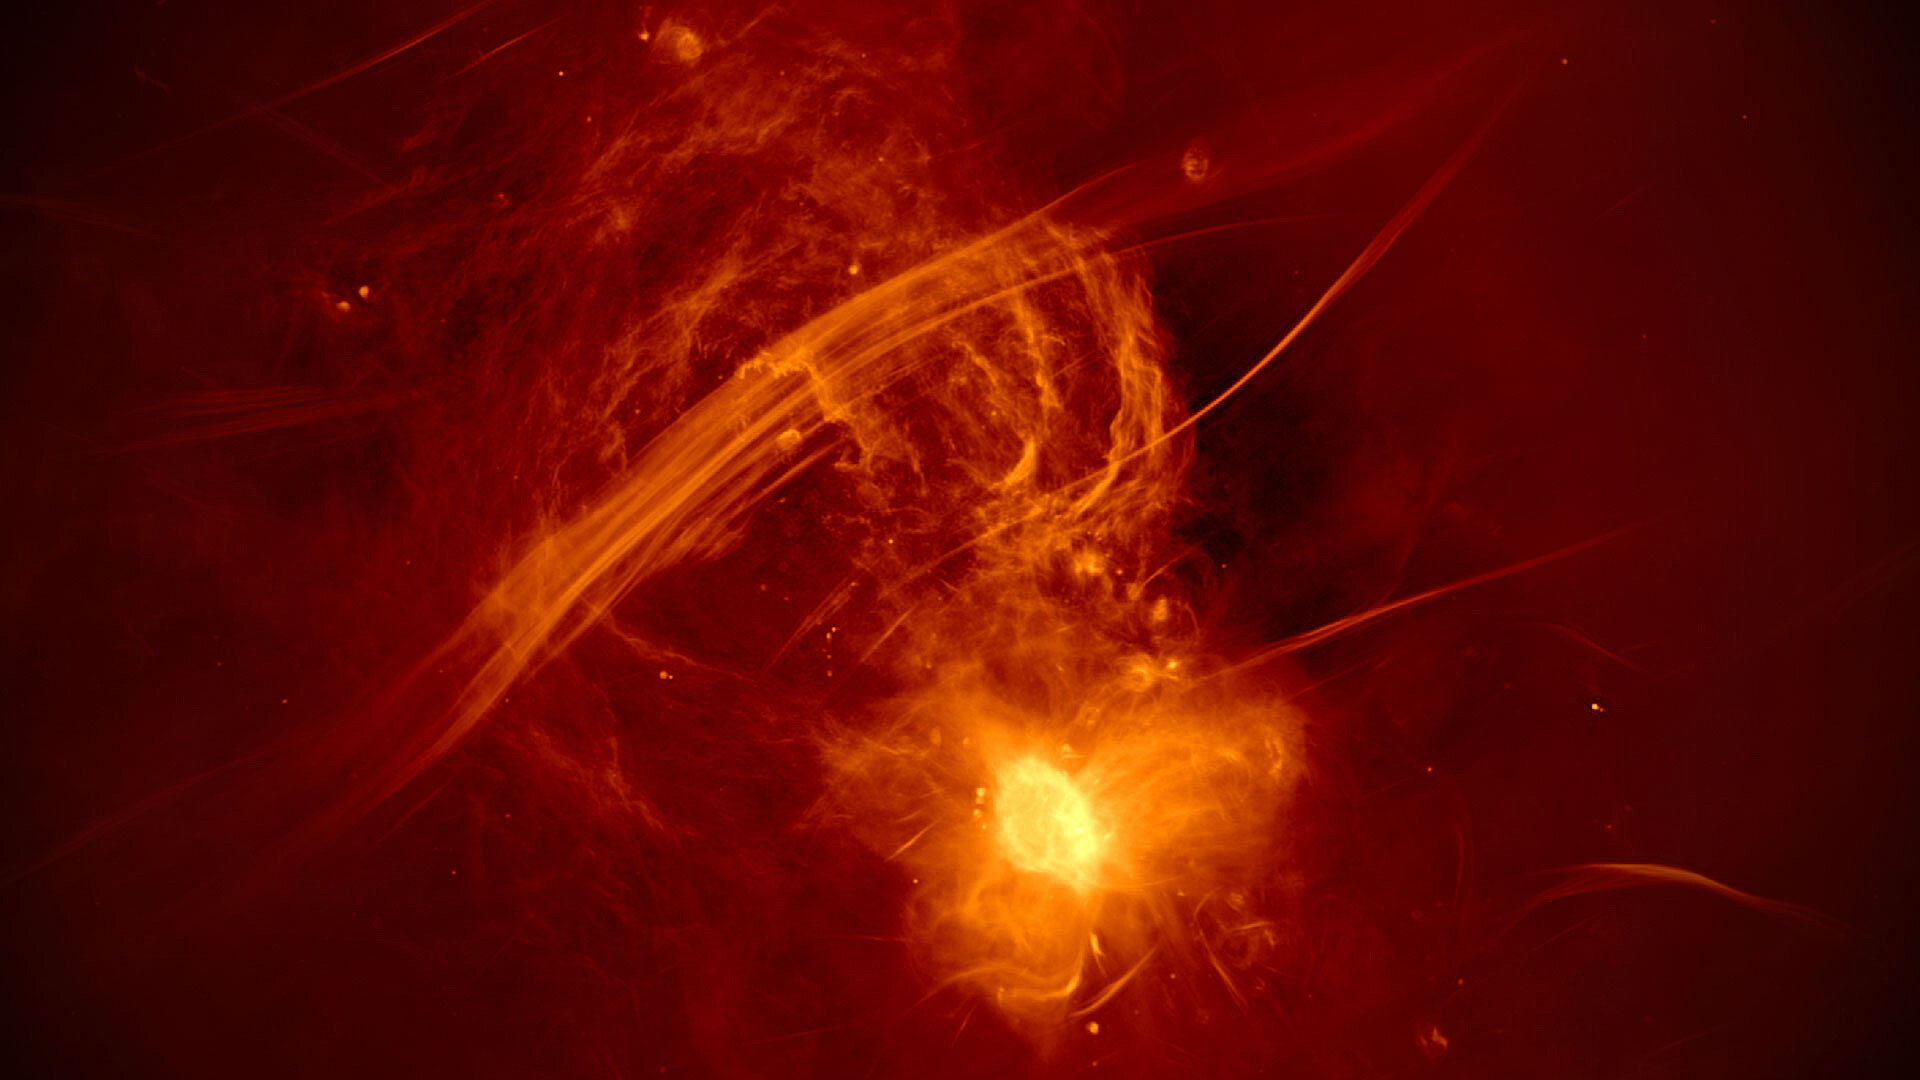 <p>Перистая сферическая структура сверху слева на снимке &mdash; выброс из центра Галактики, его пересекает радиофиламент. Снизу справа &mdash; область&nbsp;сверхмассивной&nbsp;черной&nbsp;дыры&nbsp;Стрелец А*.</p>